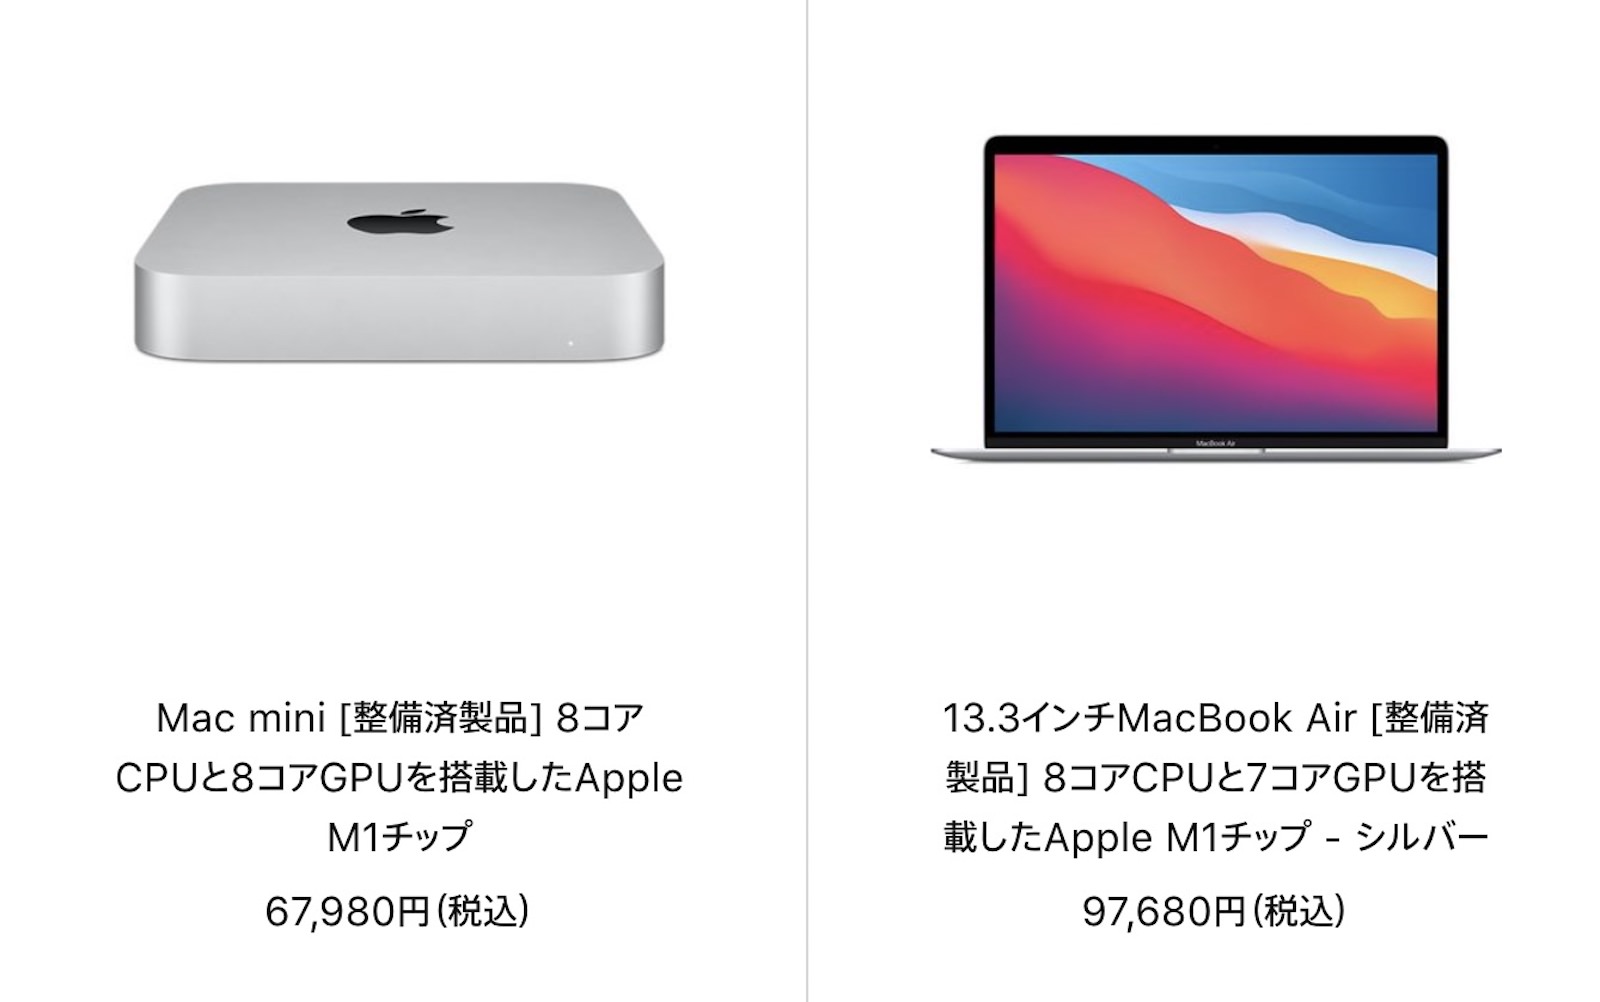 Mac-Refurbished-model-2021-11-02.jpg